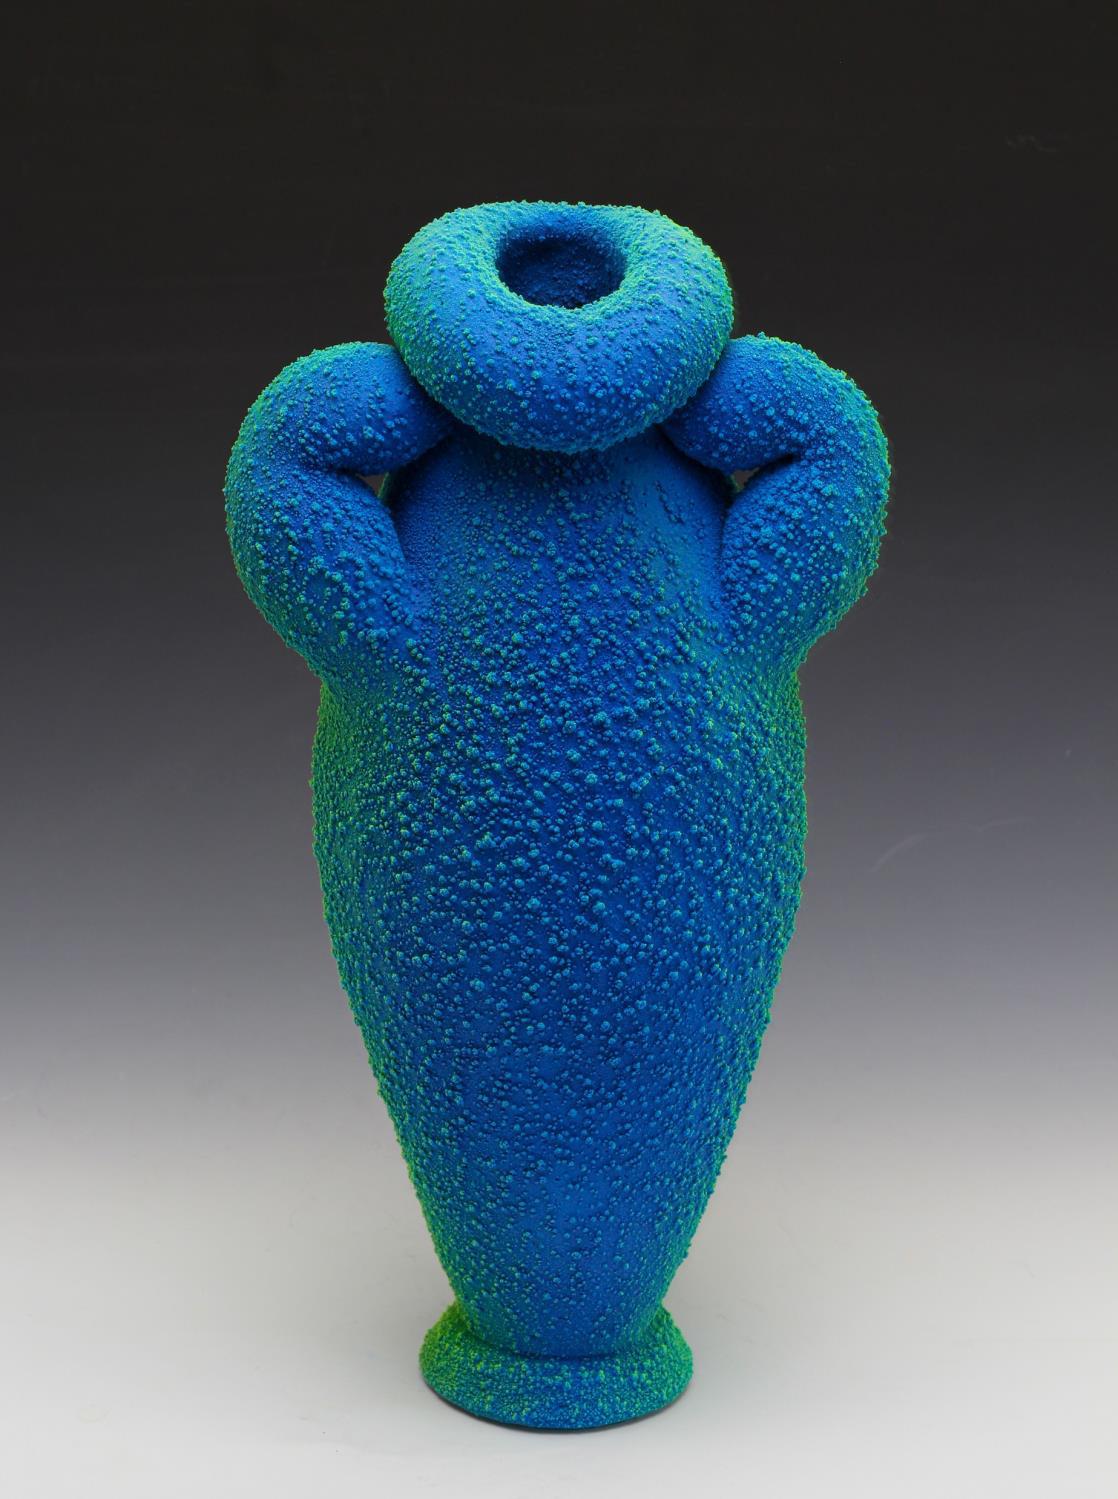 Abstract Sculpture Maxwell Mustardo - « Blue & Green Amphora 2 », céramique, sculpture, techniques mixtes, grès, plastique 